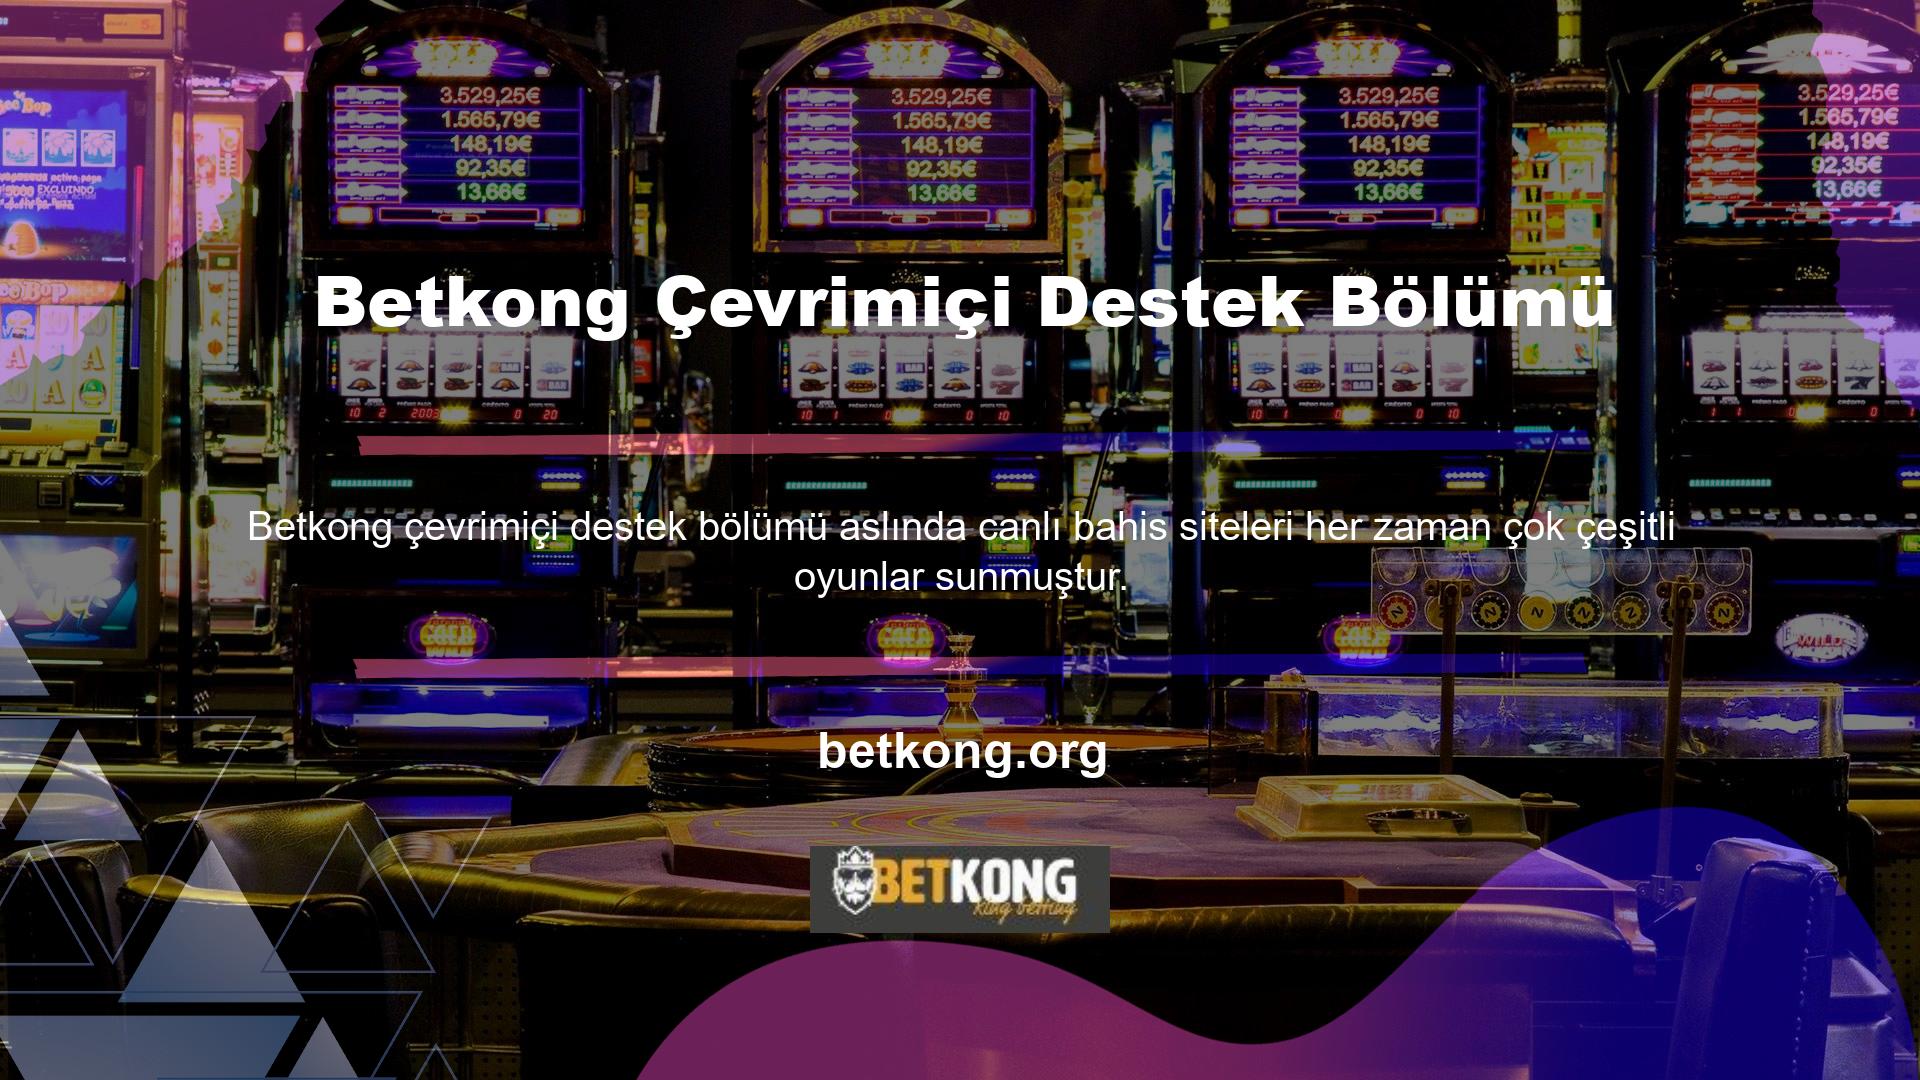 Betkong Casino hizmetine girdiğinizde karşınıza çeşitli oyun seçenekleri çıkacaktır